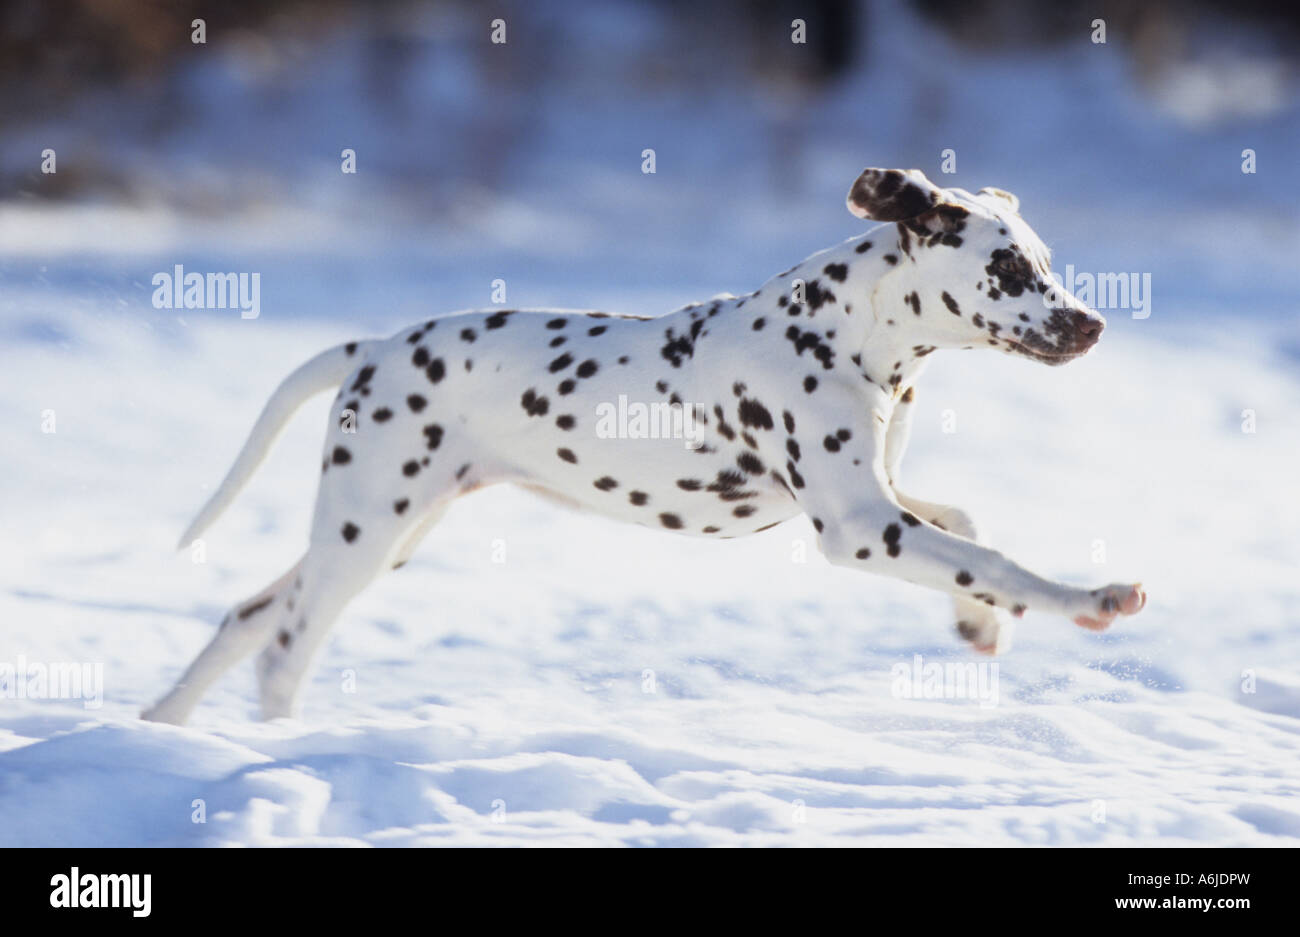 Dalmatien (Canis lupus familiaris). Spotted dog foie fonctionnant sur la neige Banque D'Images